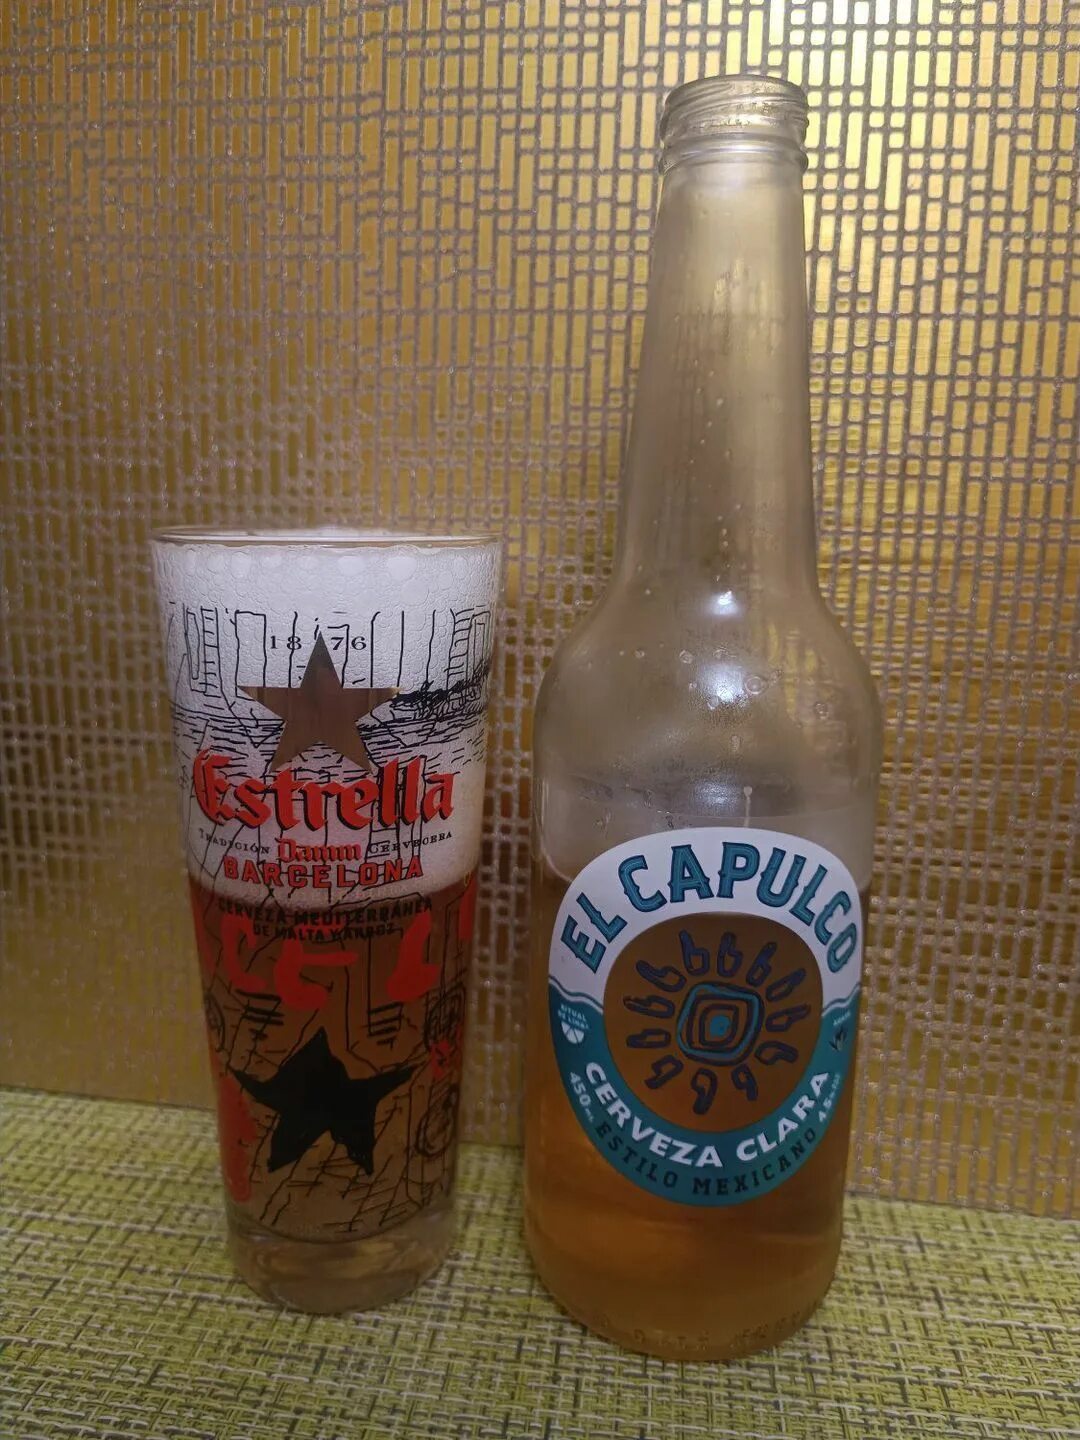 El capulko пиво. Мексиканское пиво el Acapulco. Пиво Эль Акапулько. Пивной напиток el Acapulco. Пиво alcapu el Acapulco.